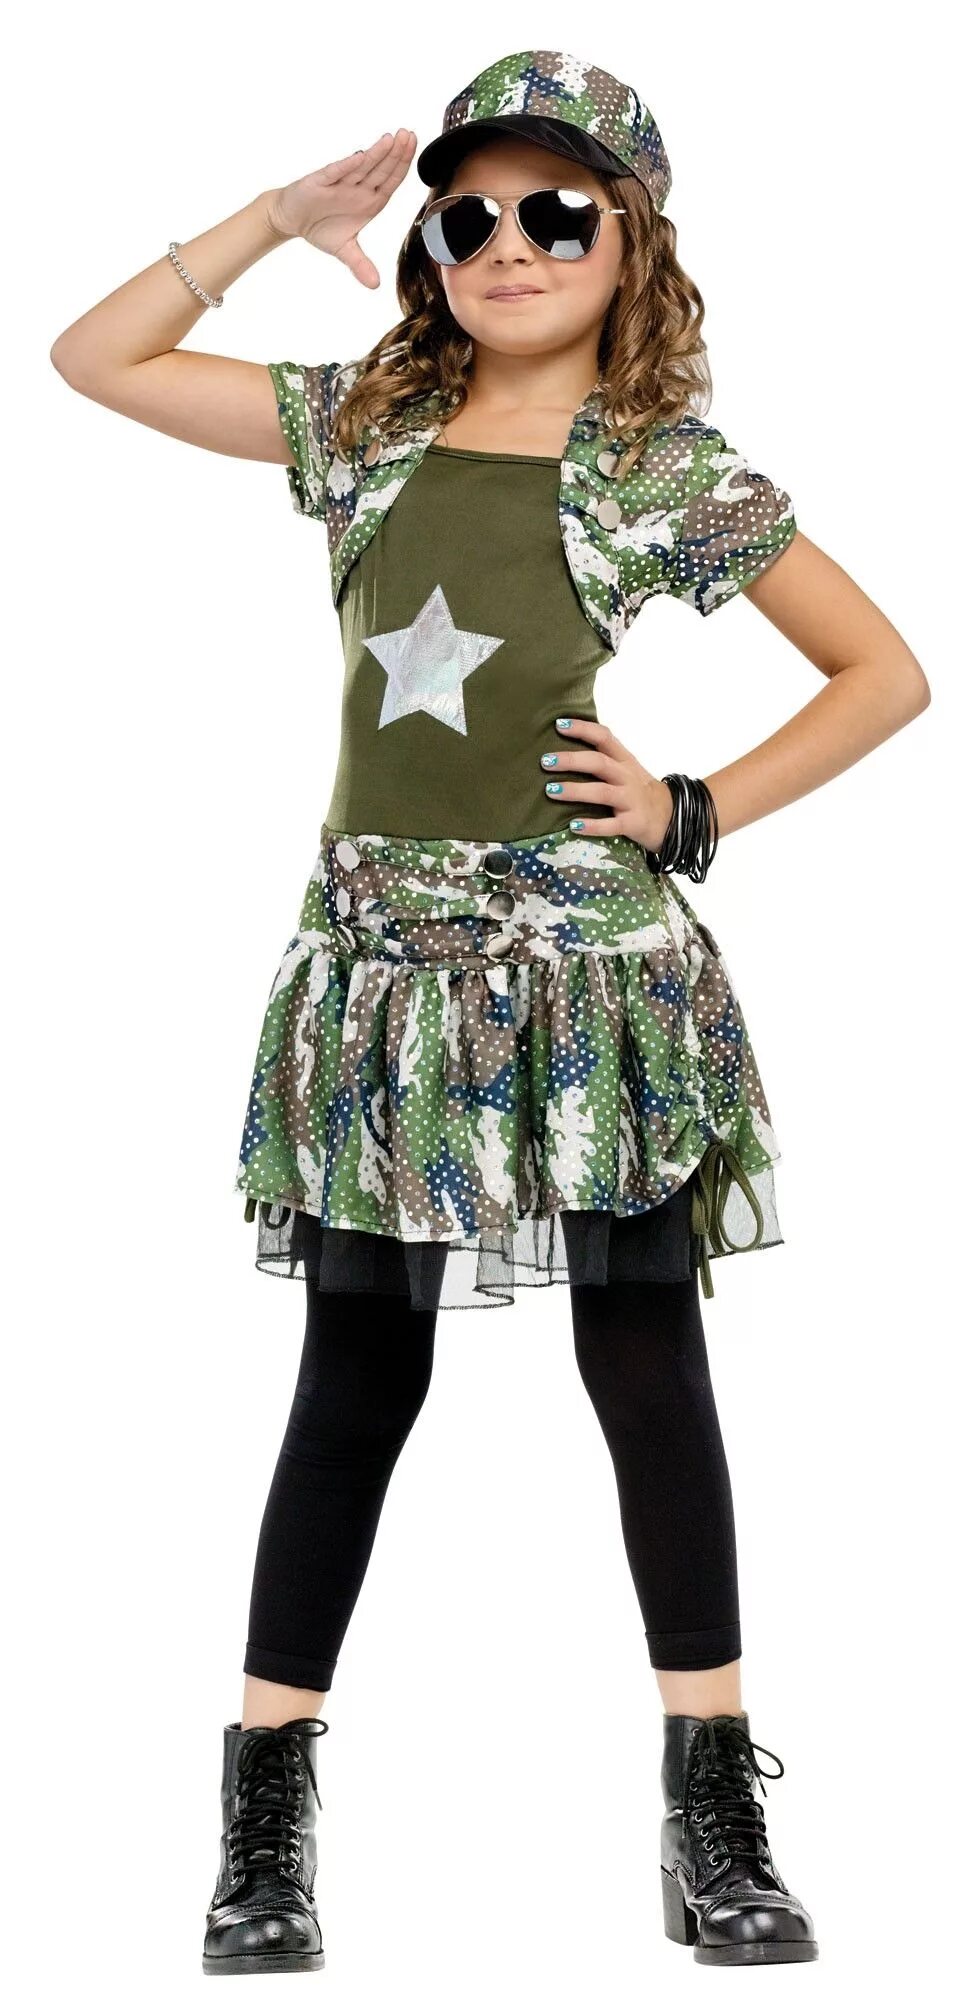 Хаки девочкам. Одежда для девочек в стиле милитари. Платье в военном стиле для девочки. Стиль милитари для детей. Костюм хаки для девочки.